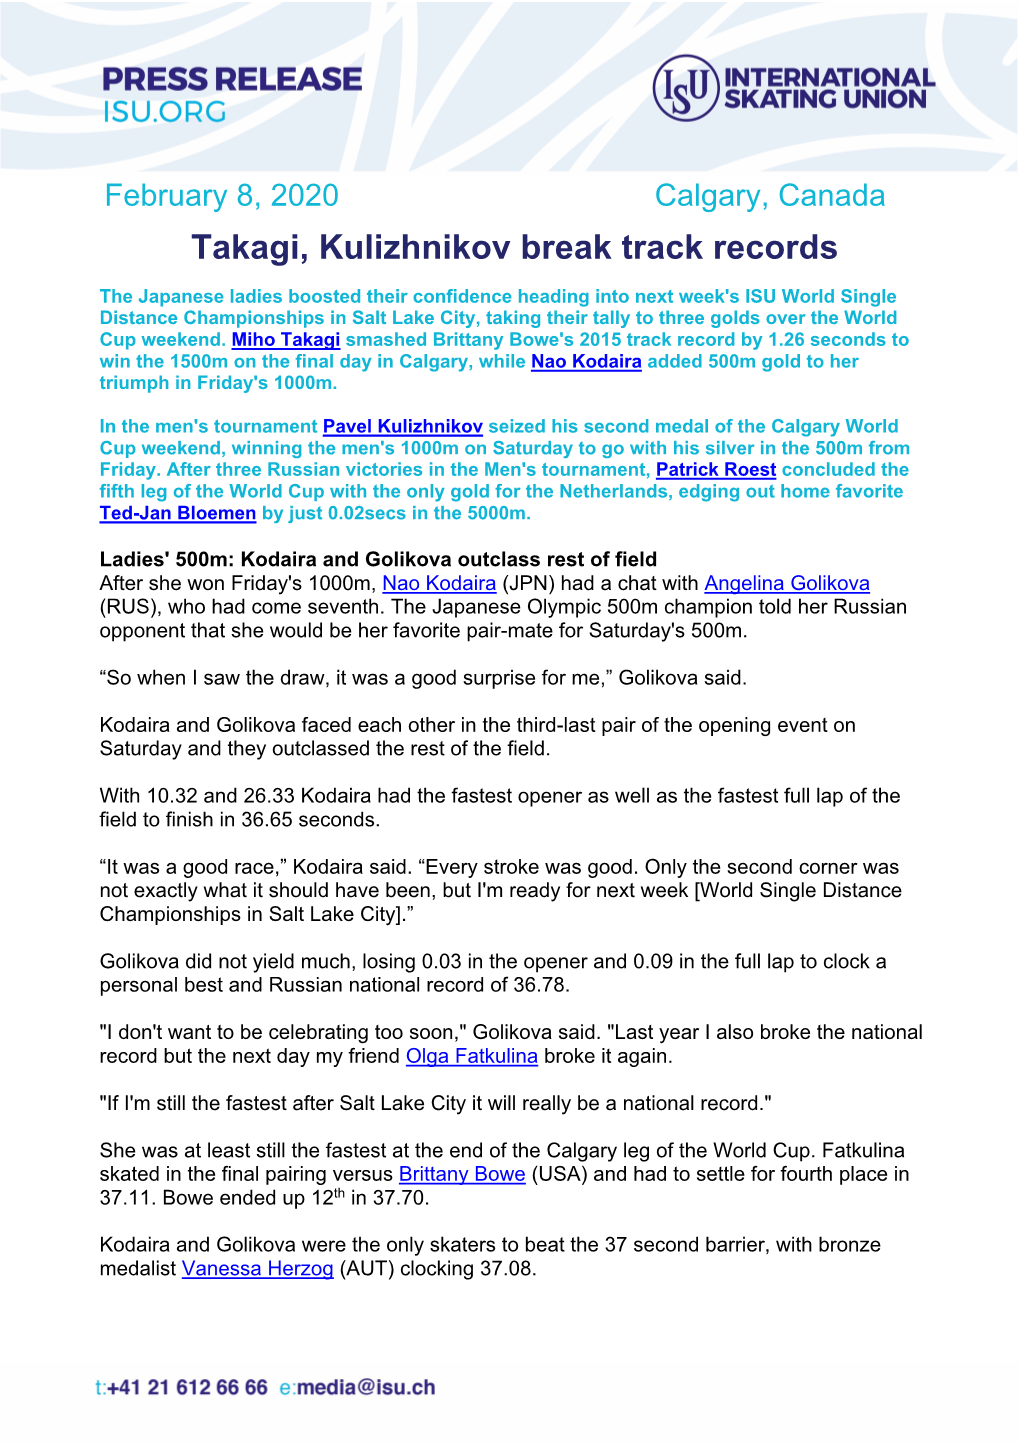 Takagi, Kulizhnikov Break Track Records